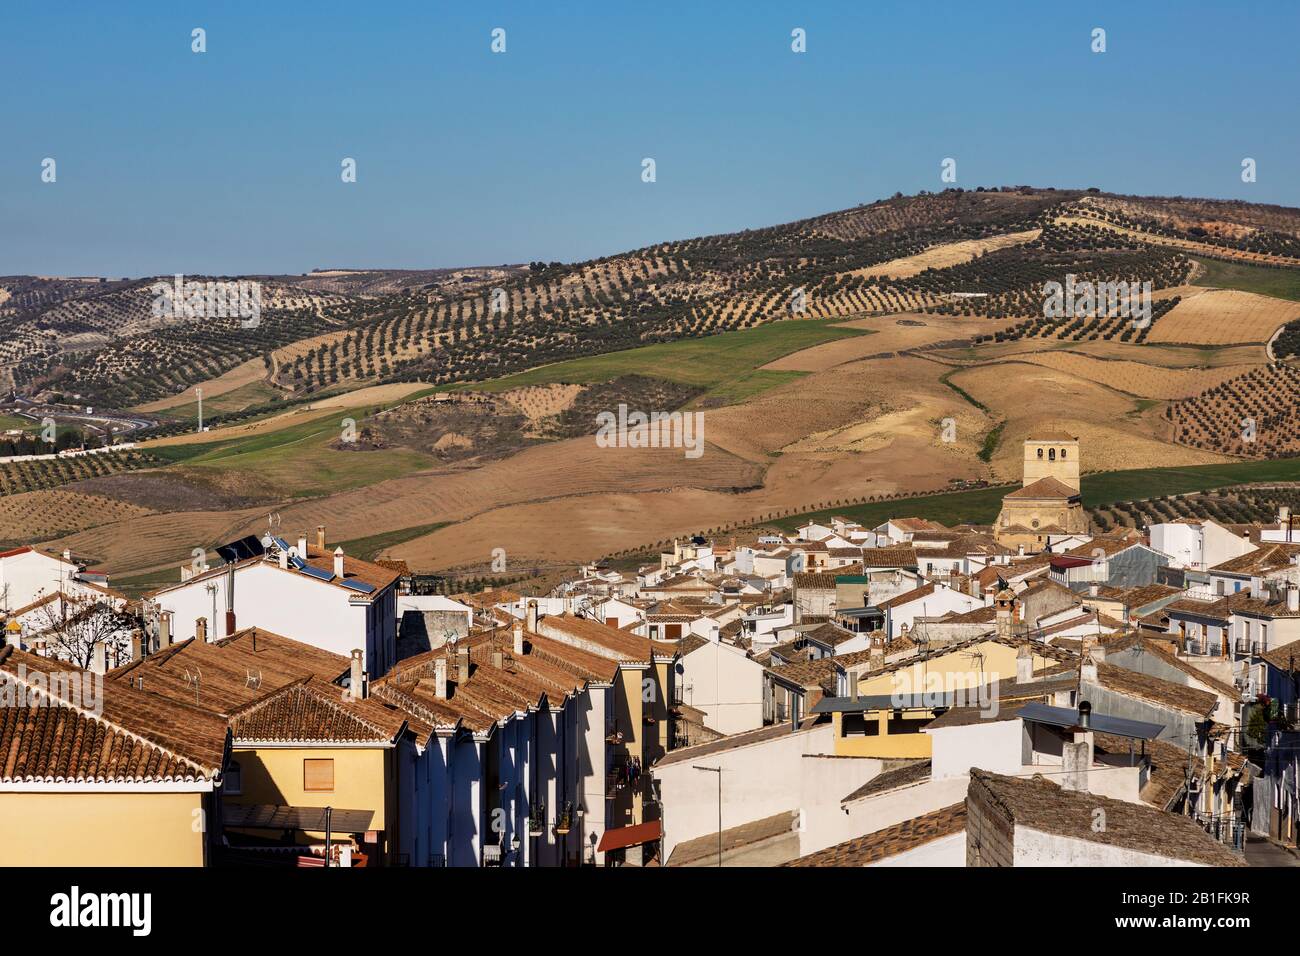 Alhama de Granada, province of Granada, Spain Stock Photo